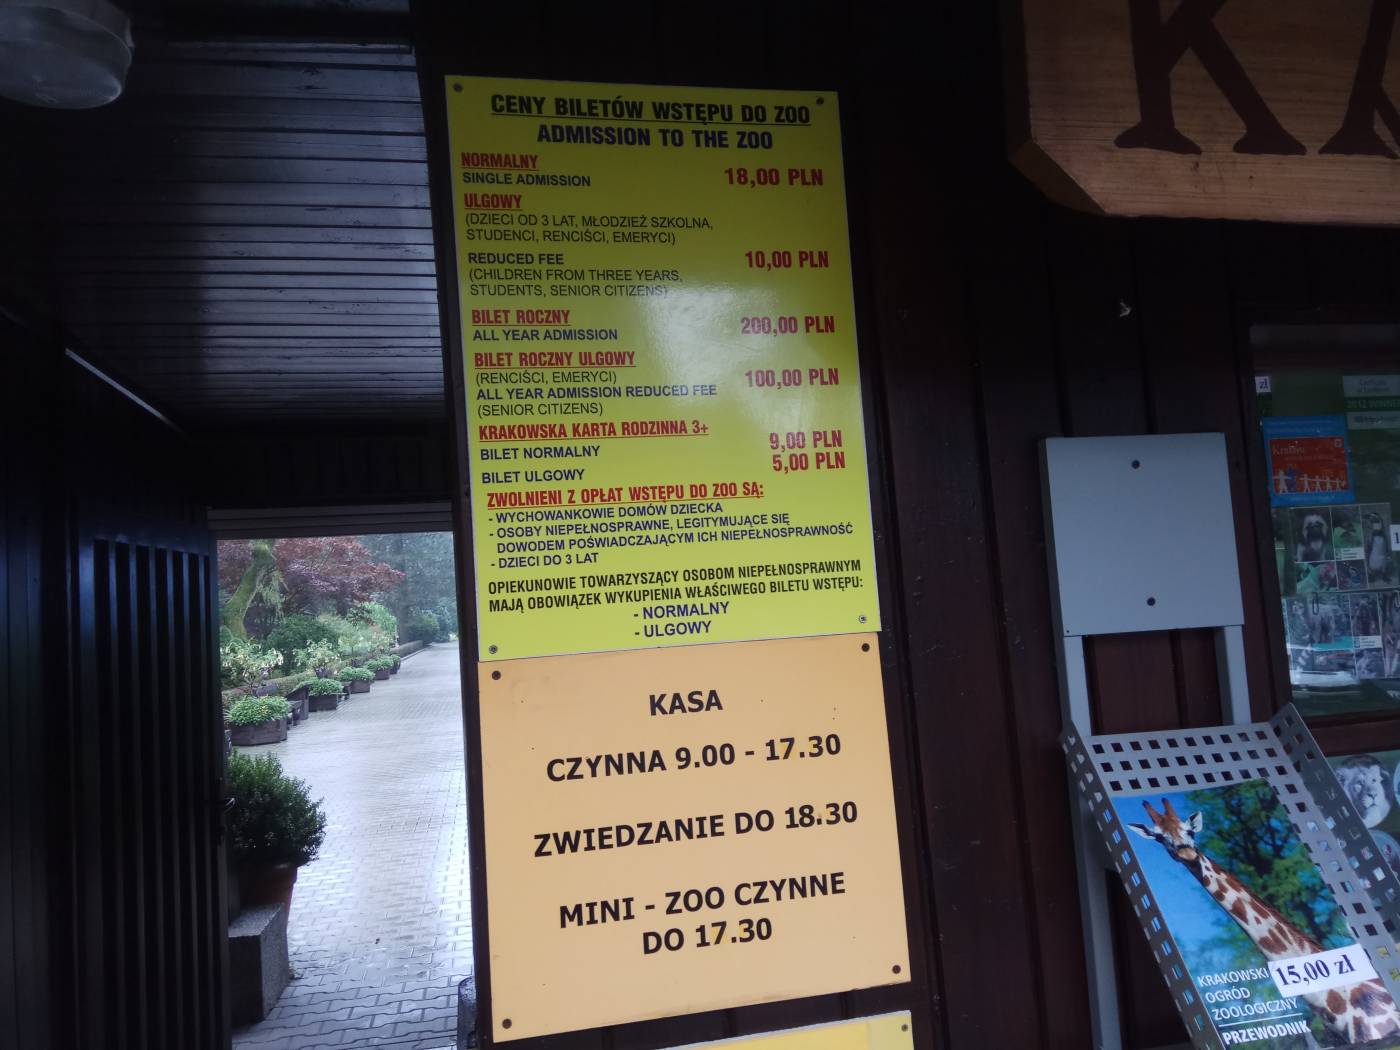 Цены на посещение зоопарка в Кракове